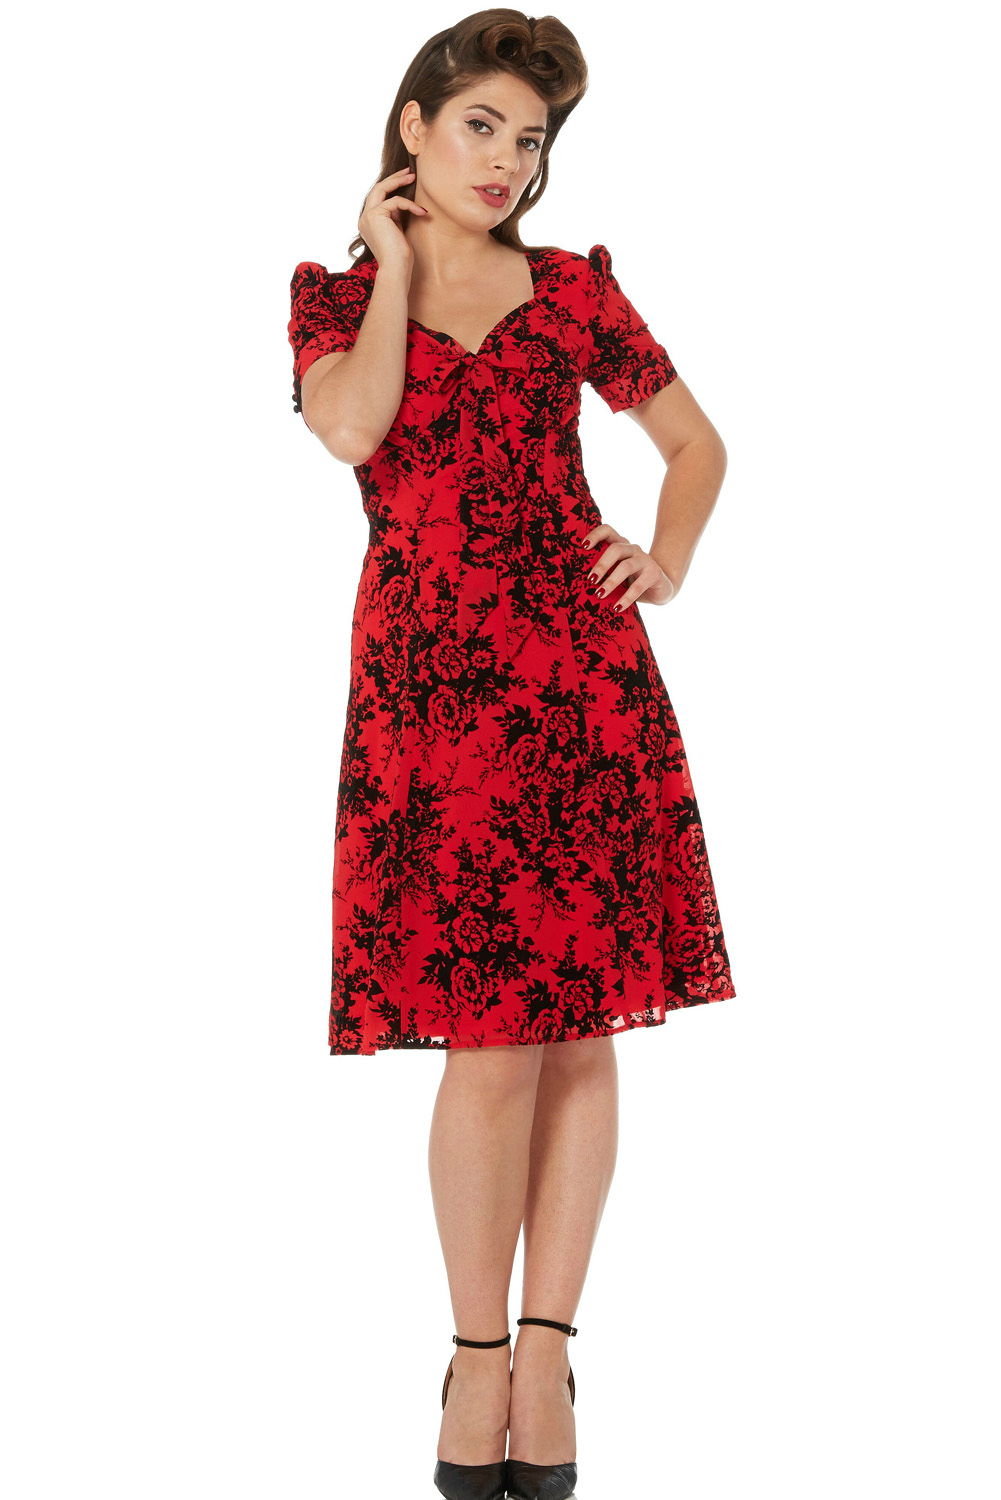 Voodoo Vixen Red Vintage 1950s Dress 2015